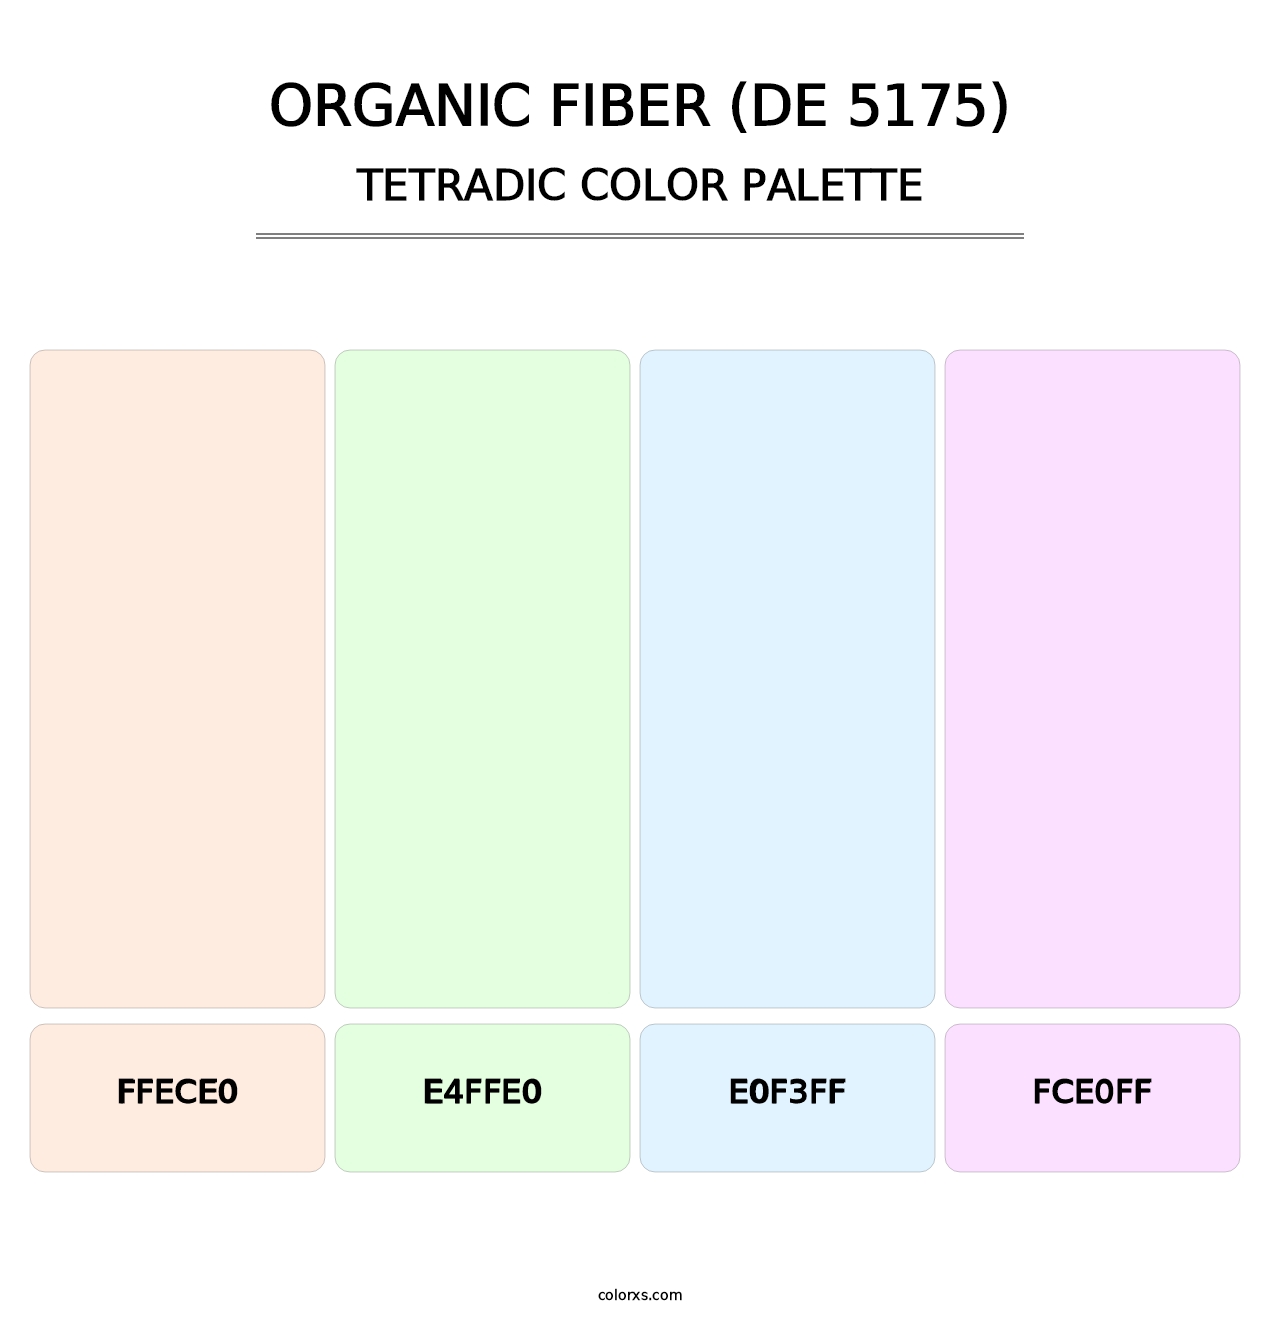 Organic Fiber (DE 5175) - Tetradic Color Palette